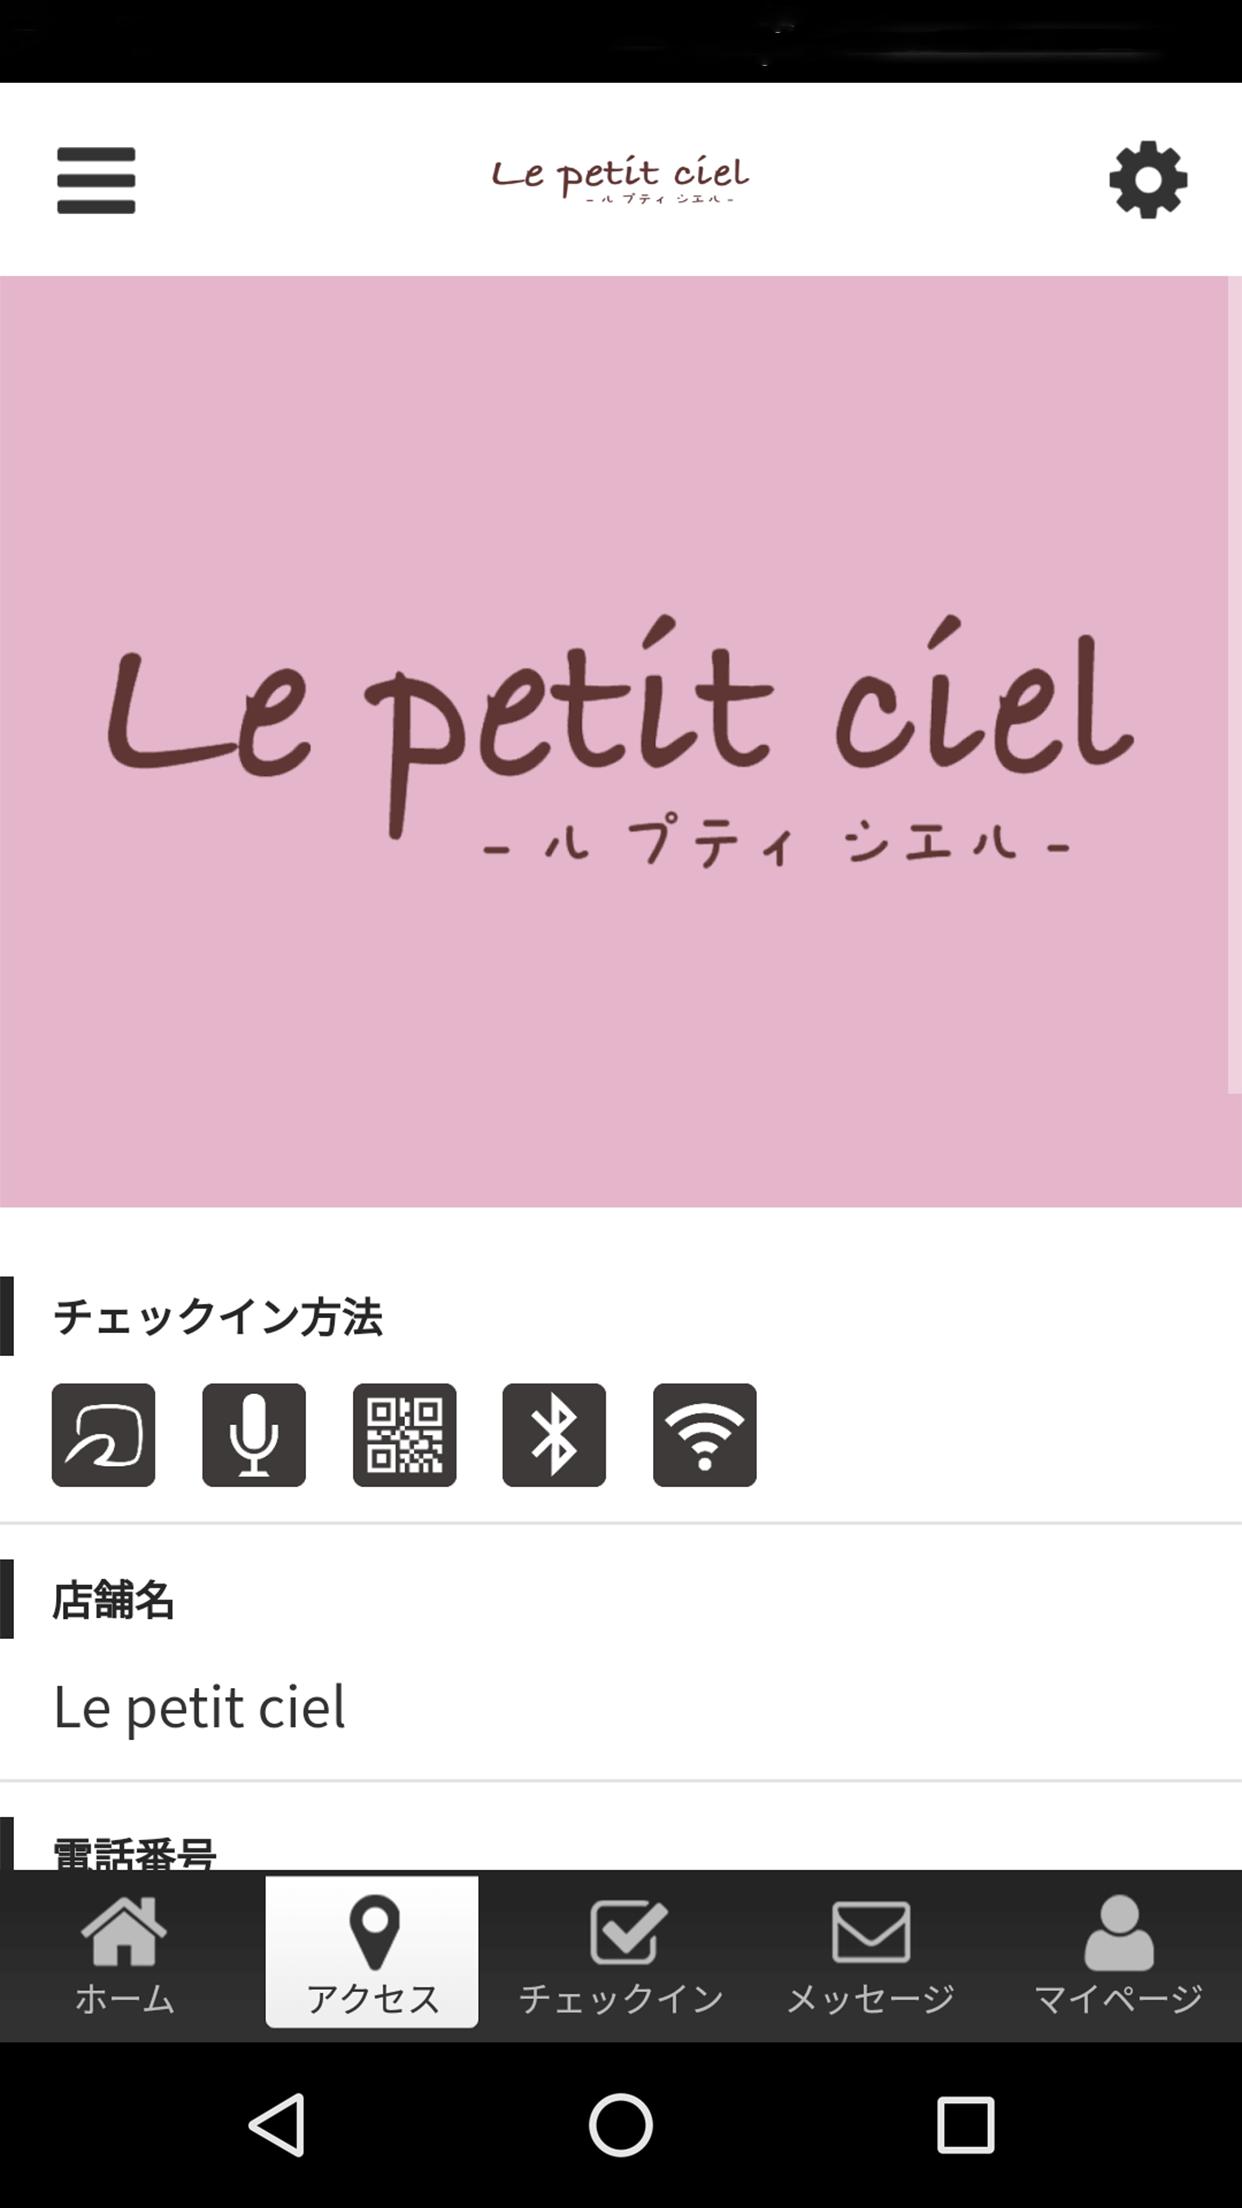 Le petit ciel -ル プティ シエル- 2.12.0 Screenshot 4